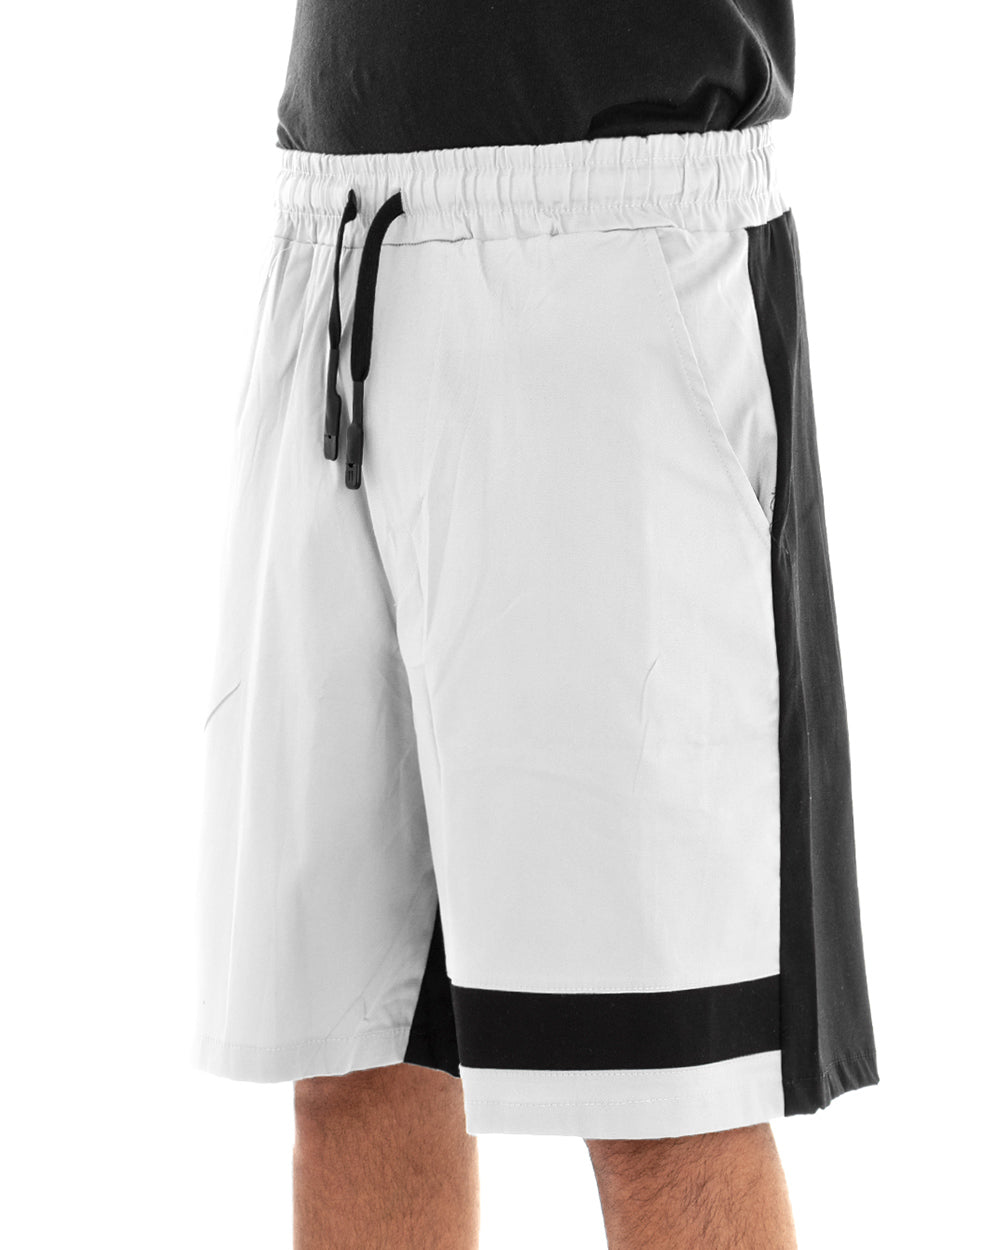 Bermuda Shorts Men Two-Tone White Black GIOSAL-PC1630A